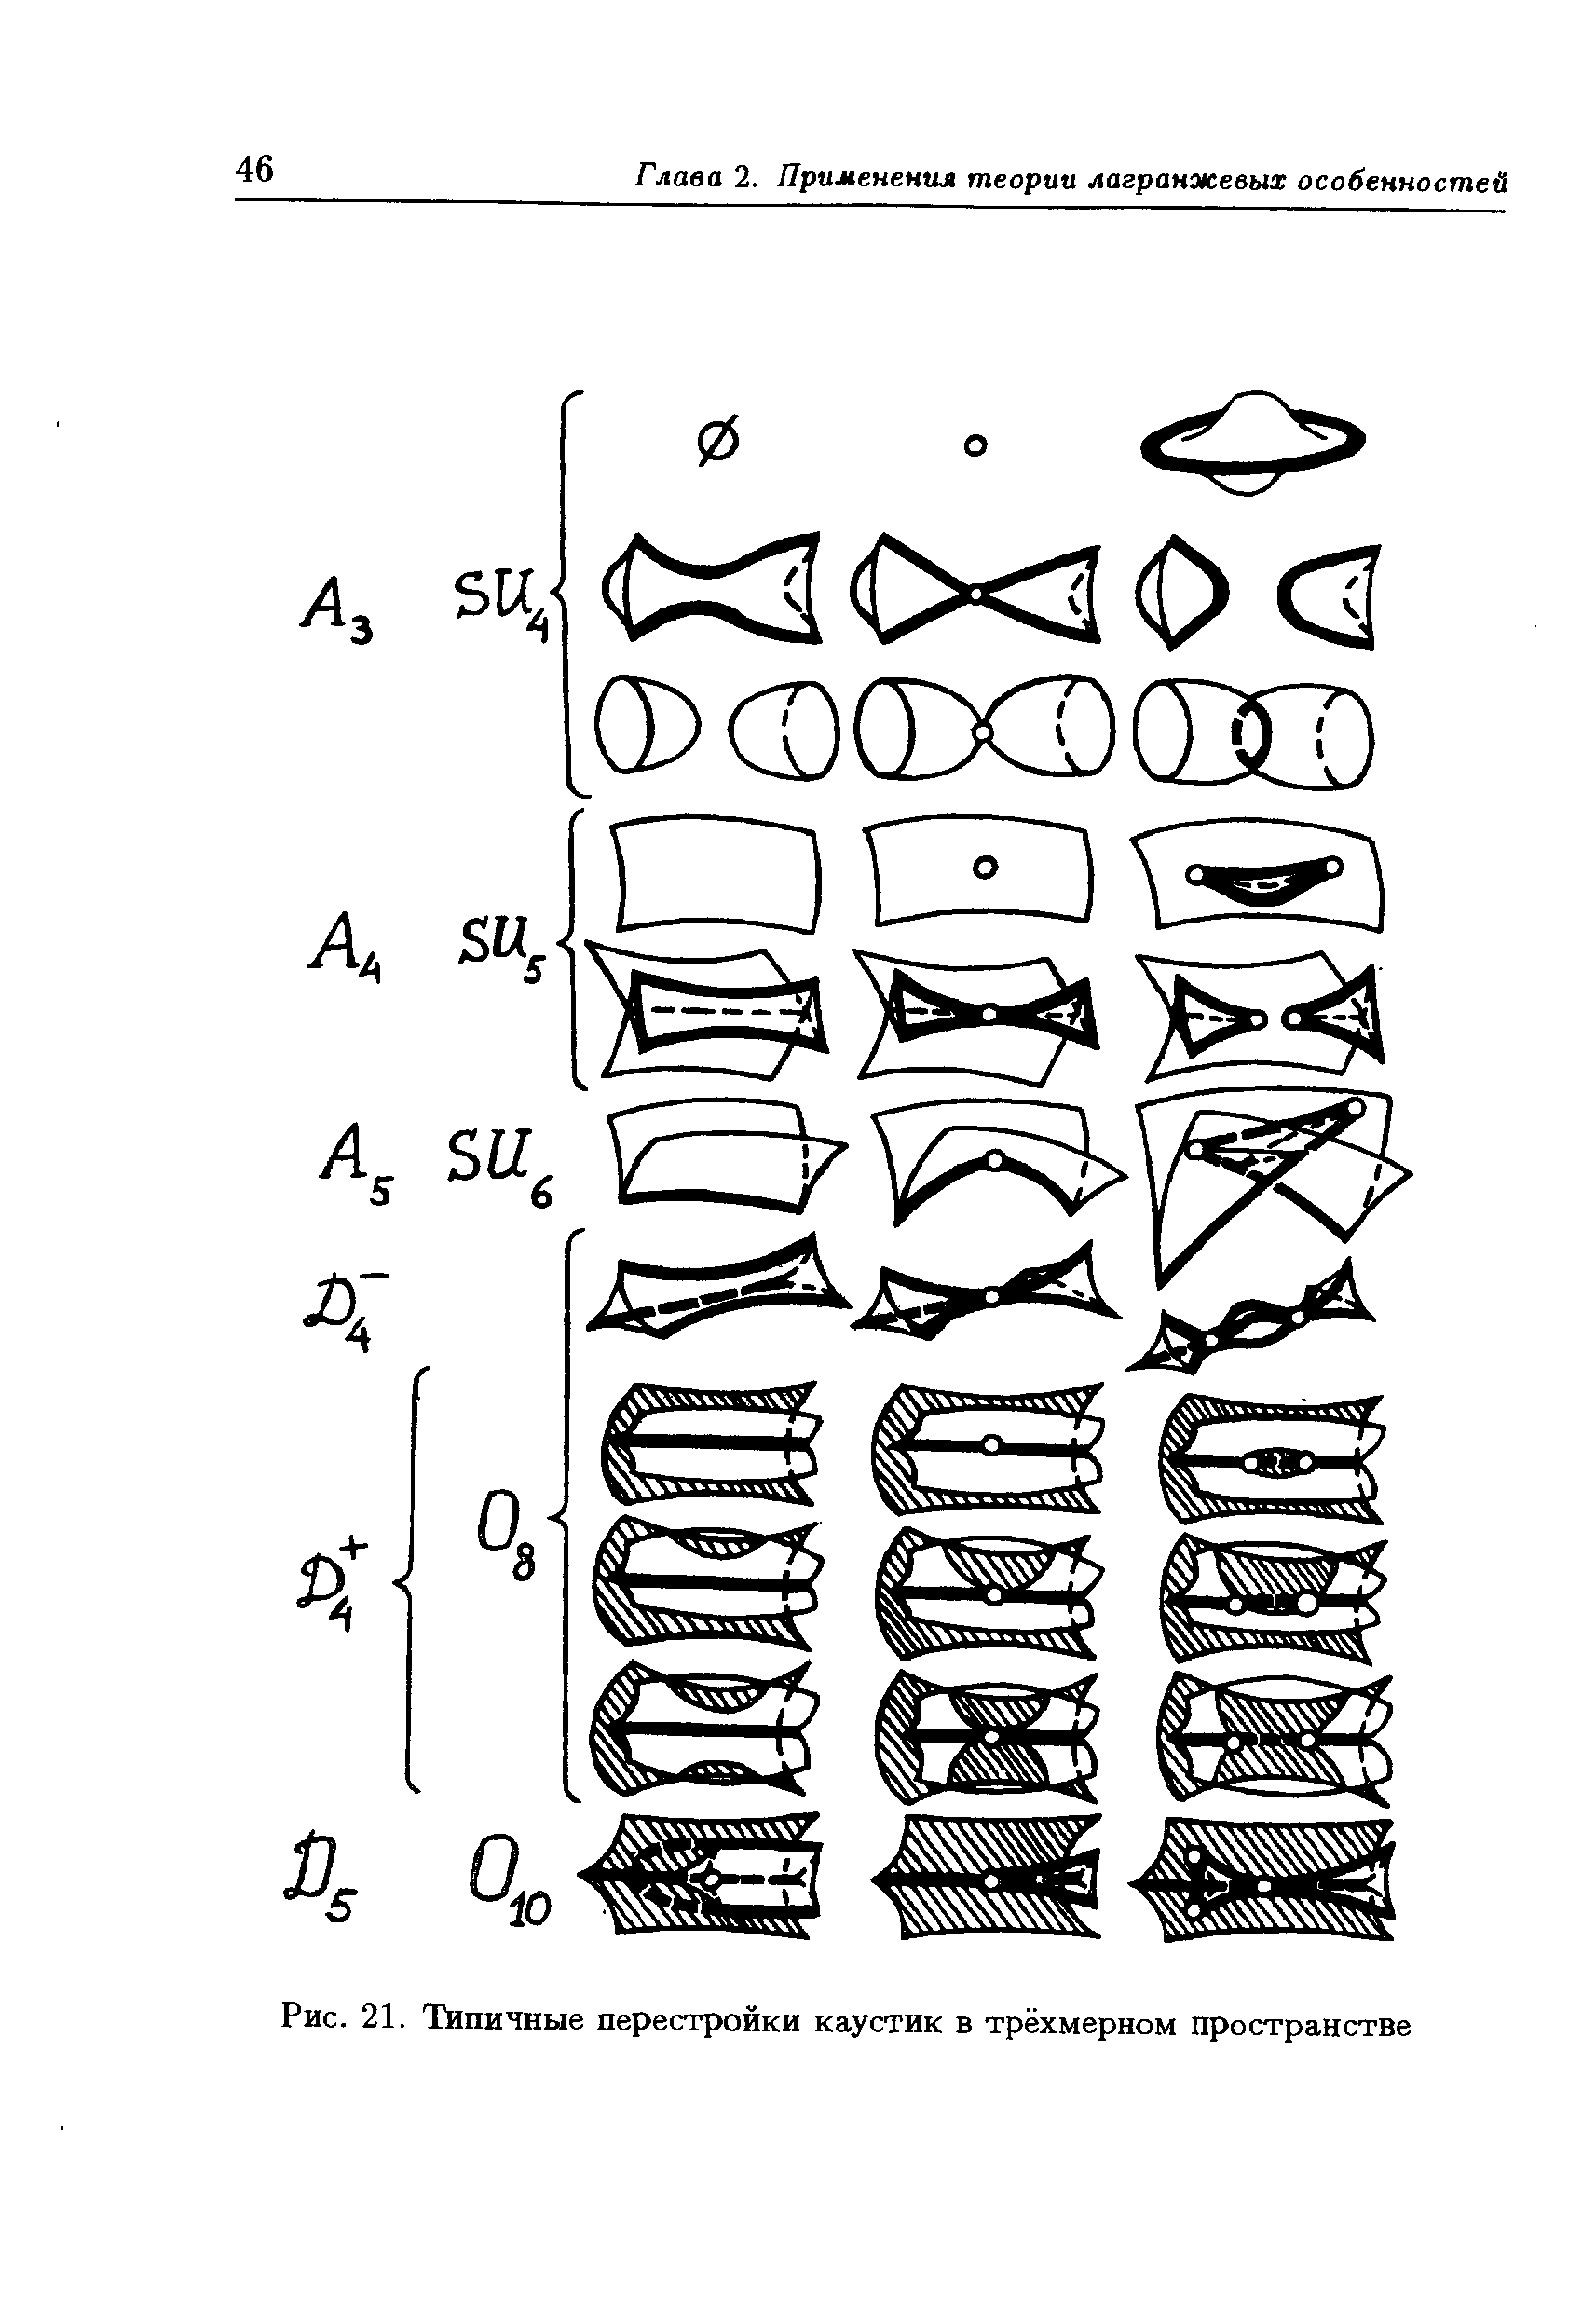 Рис. 21. Типичные перестройки каустик в трёхмерном пространстве
